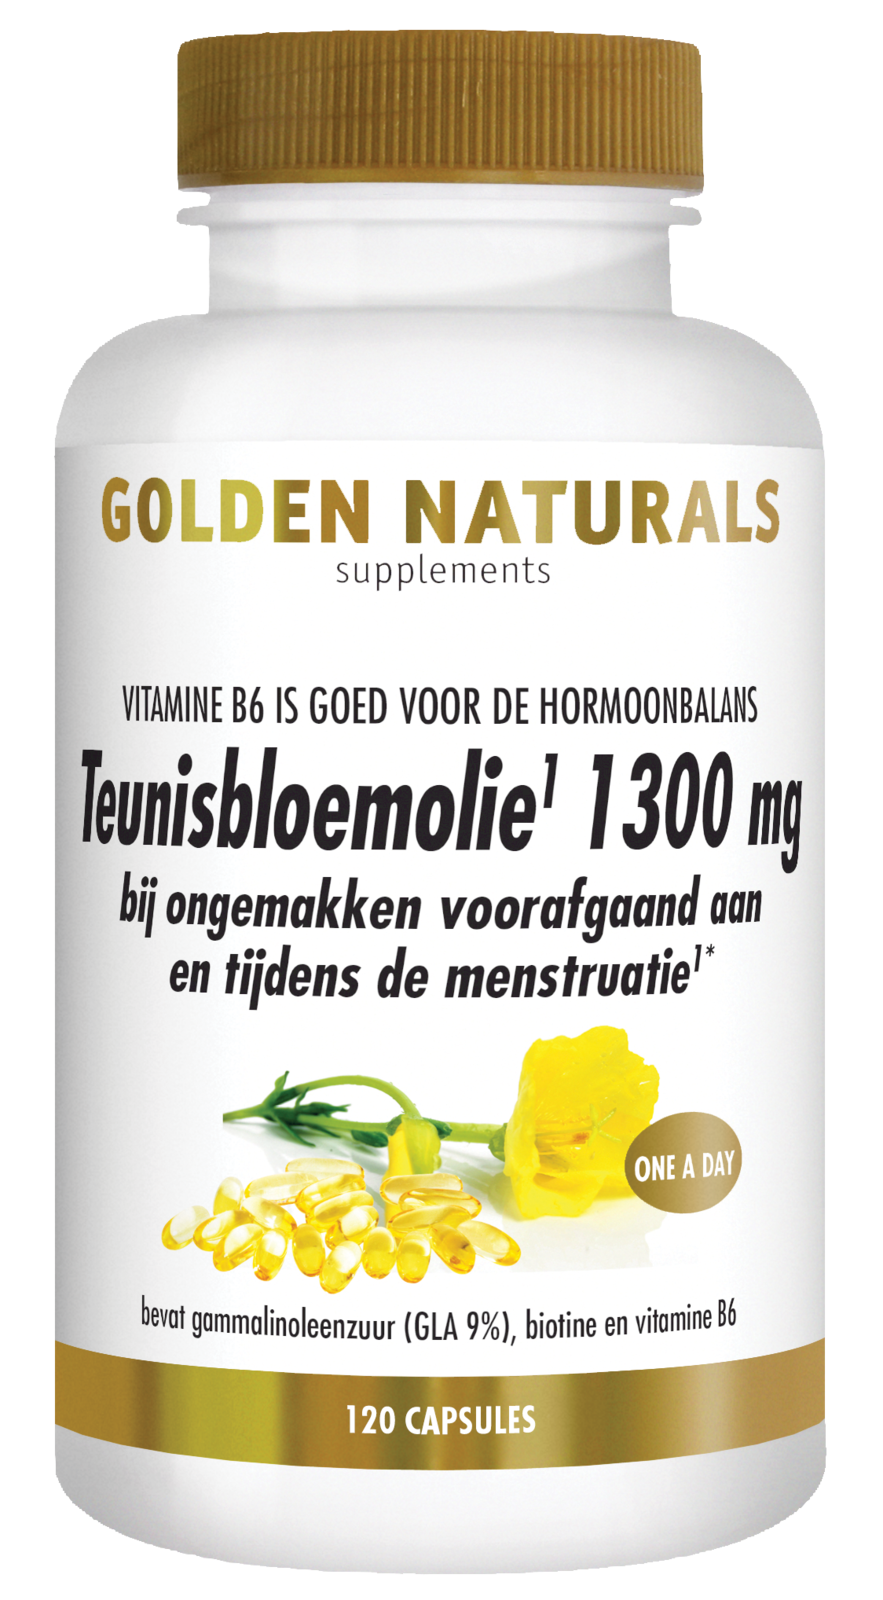 Afbeelding van Golden Naturals Teunisbloemolie 1300mg Capsules